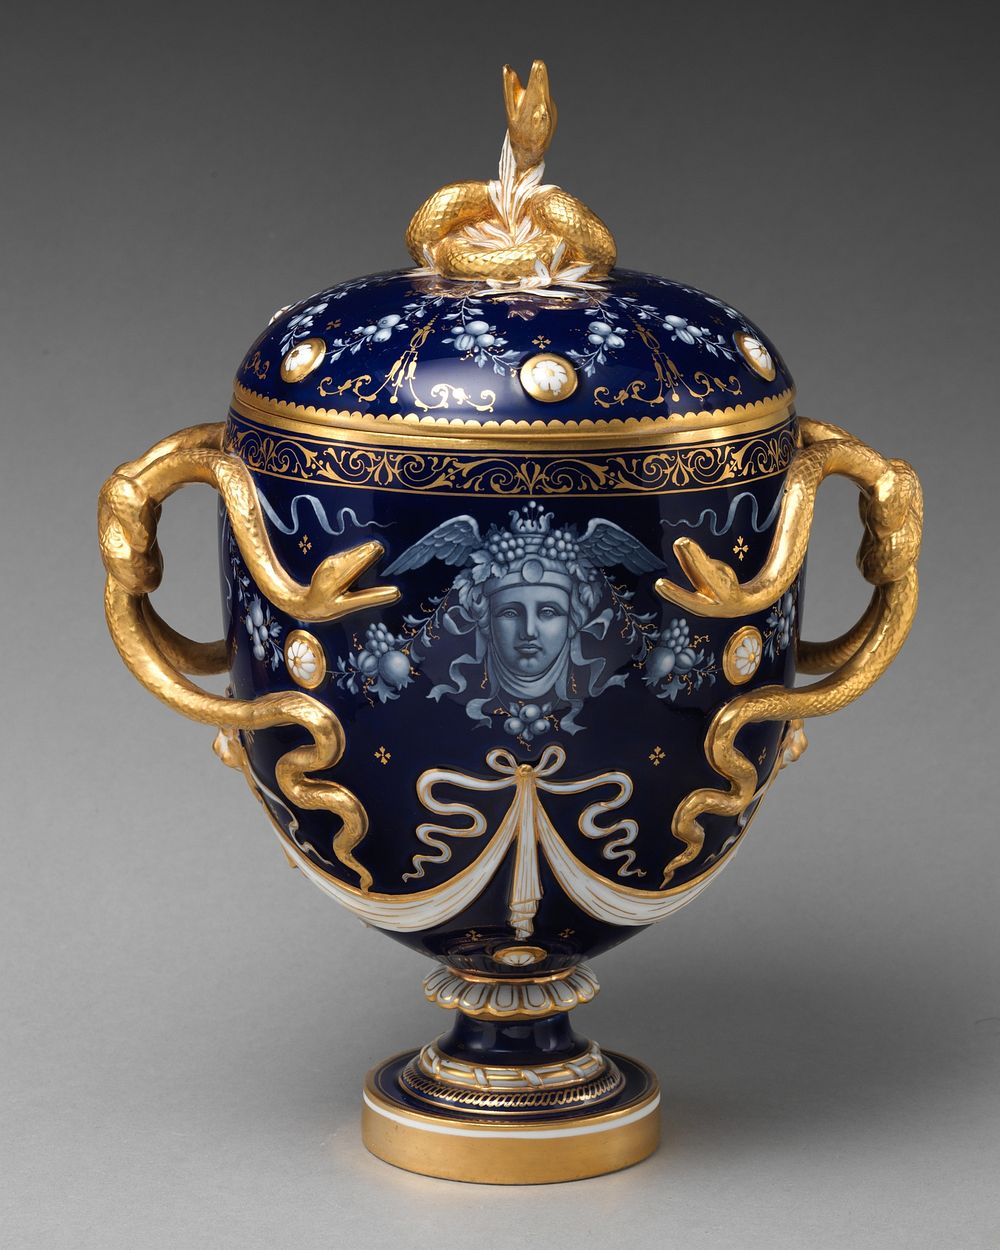 Lidded vase with Medusa decoration and snake handles